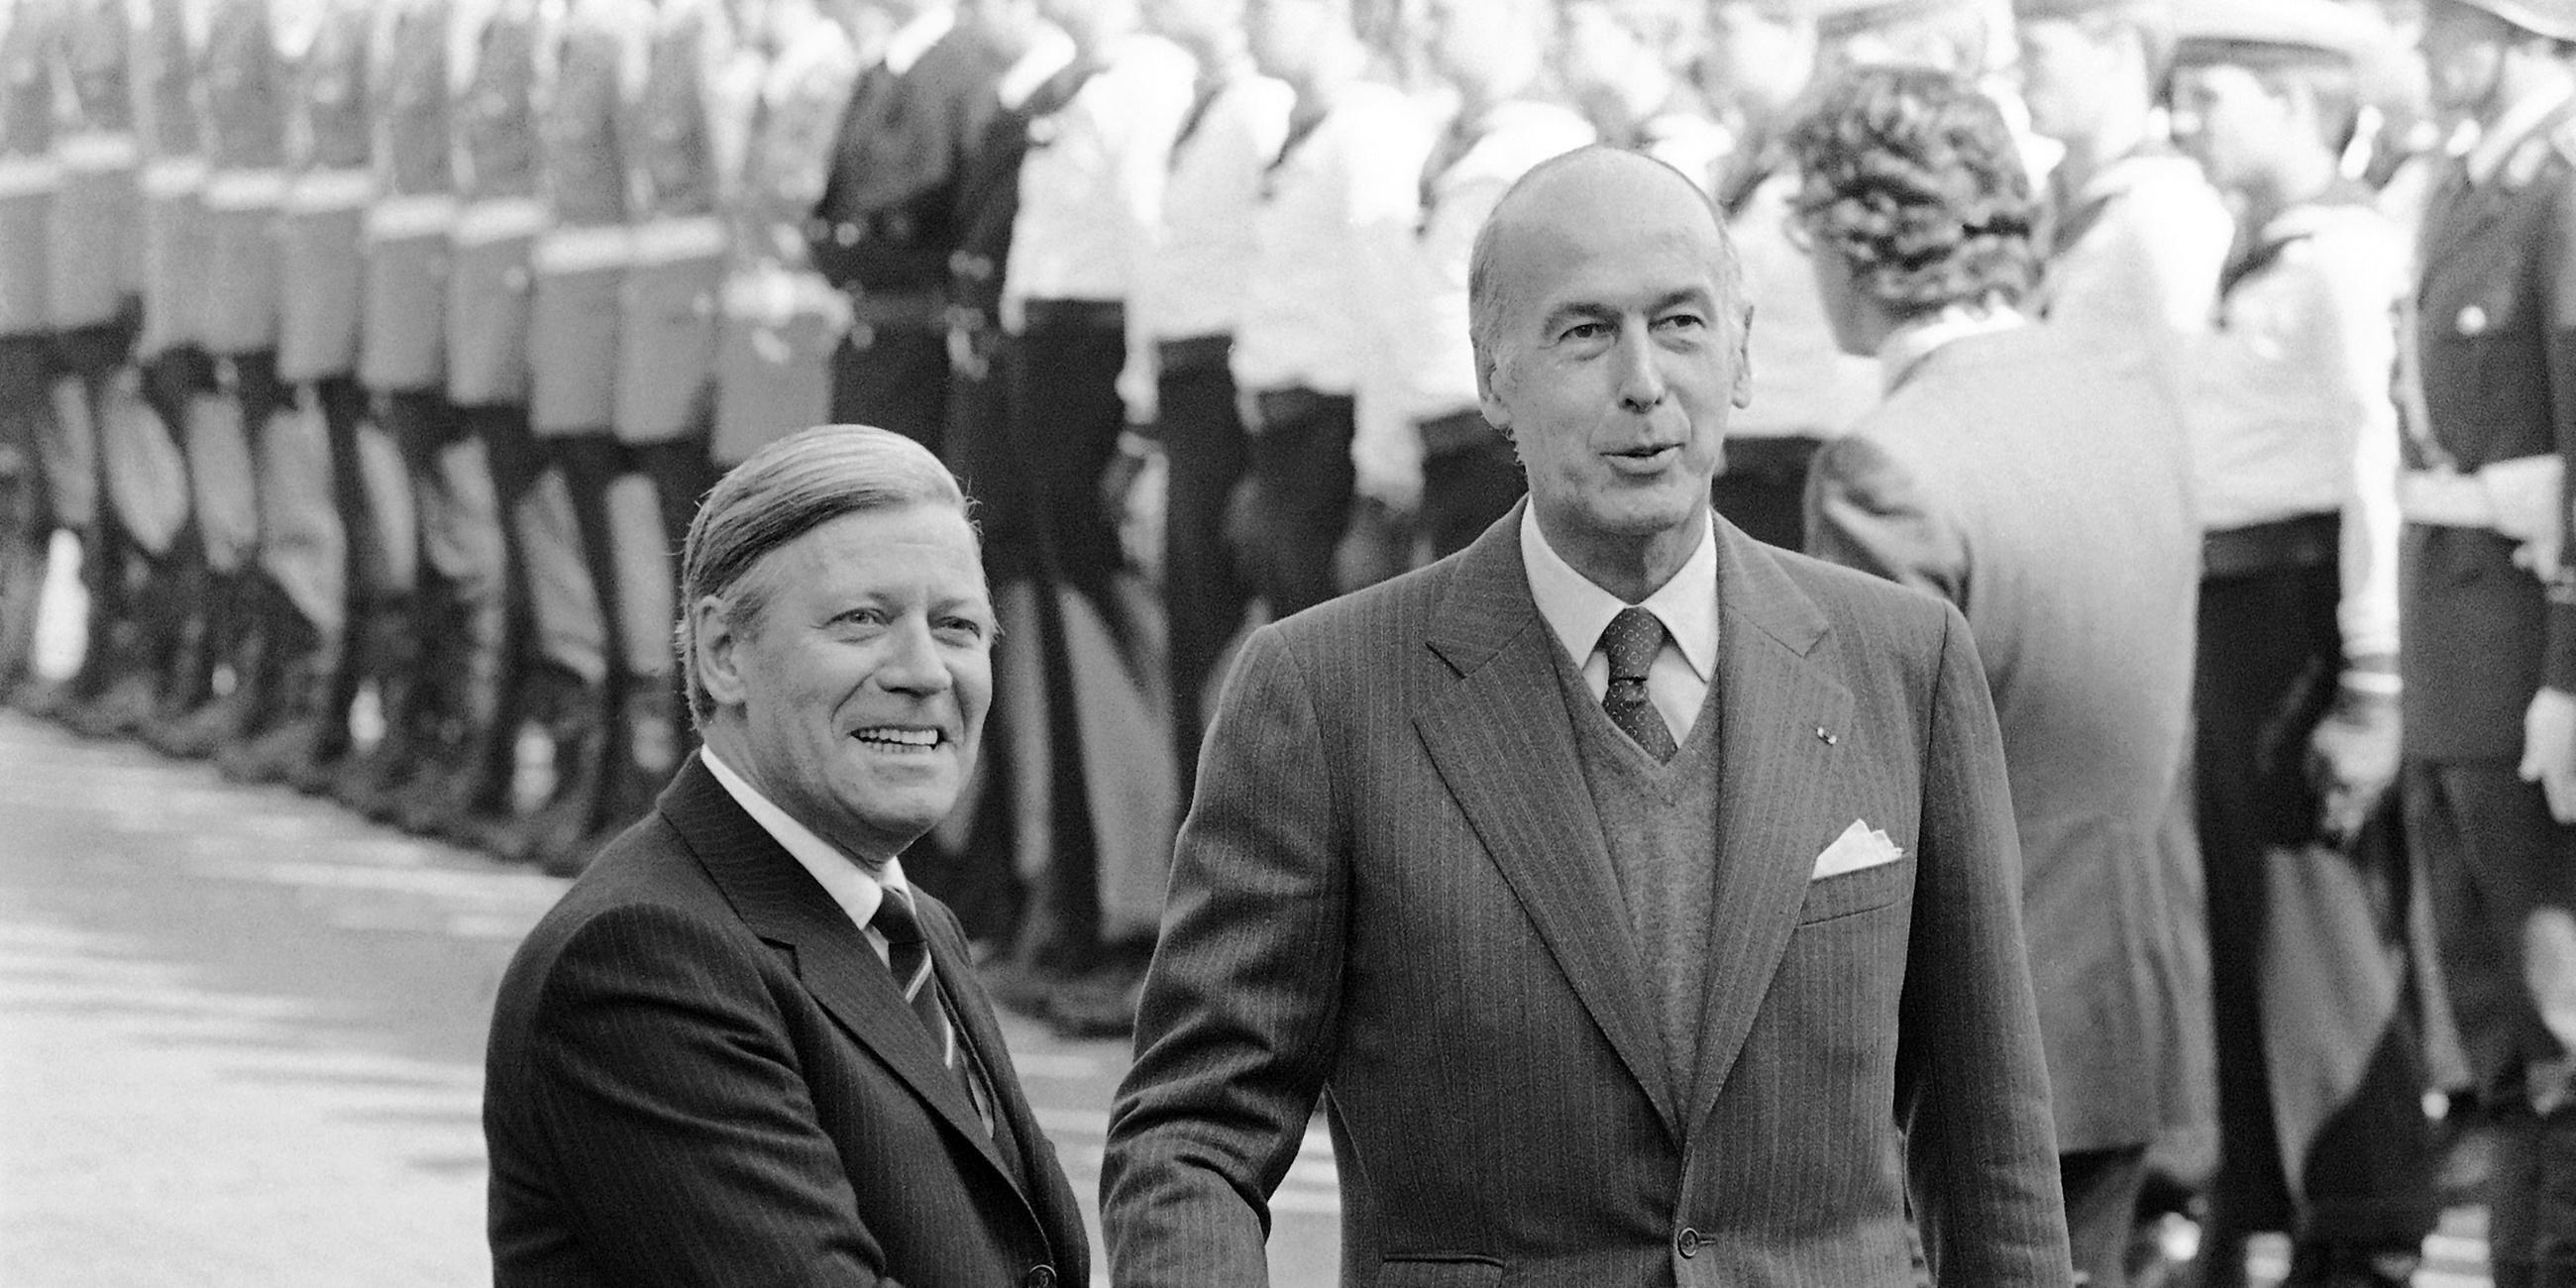 Archiv: Helmut Schmidt und Valéry Giscard d’Estaing am 02.10.1979 in Bonn